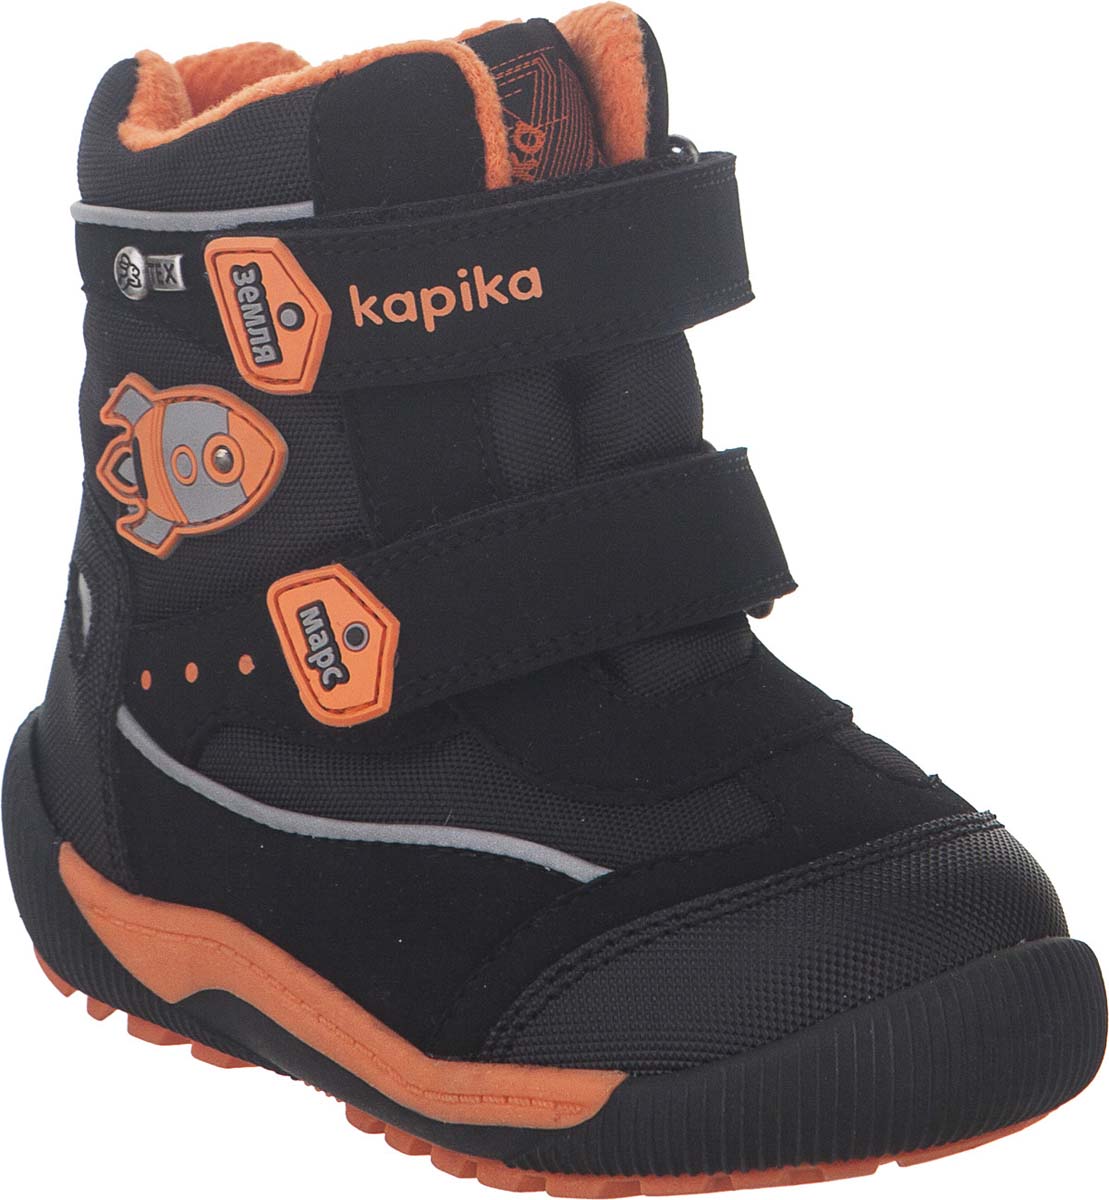 Ботинки для мальчика Kapika KapiTEX, цвет: черный. 41207-1. Размер 24